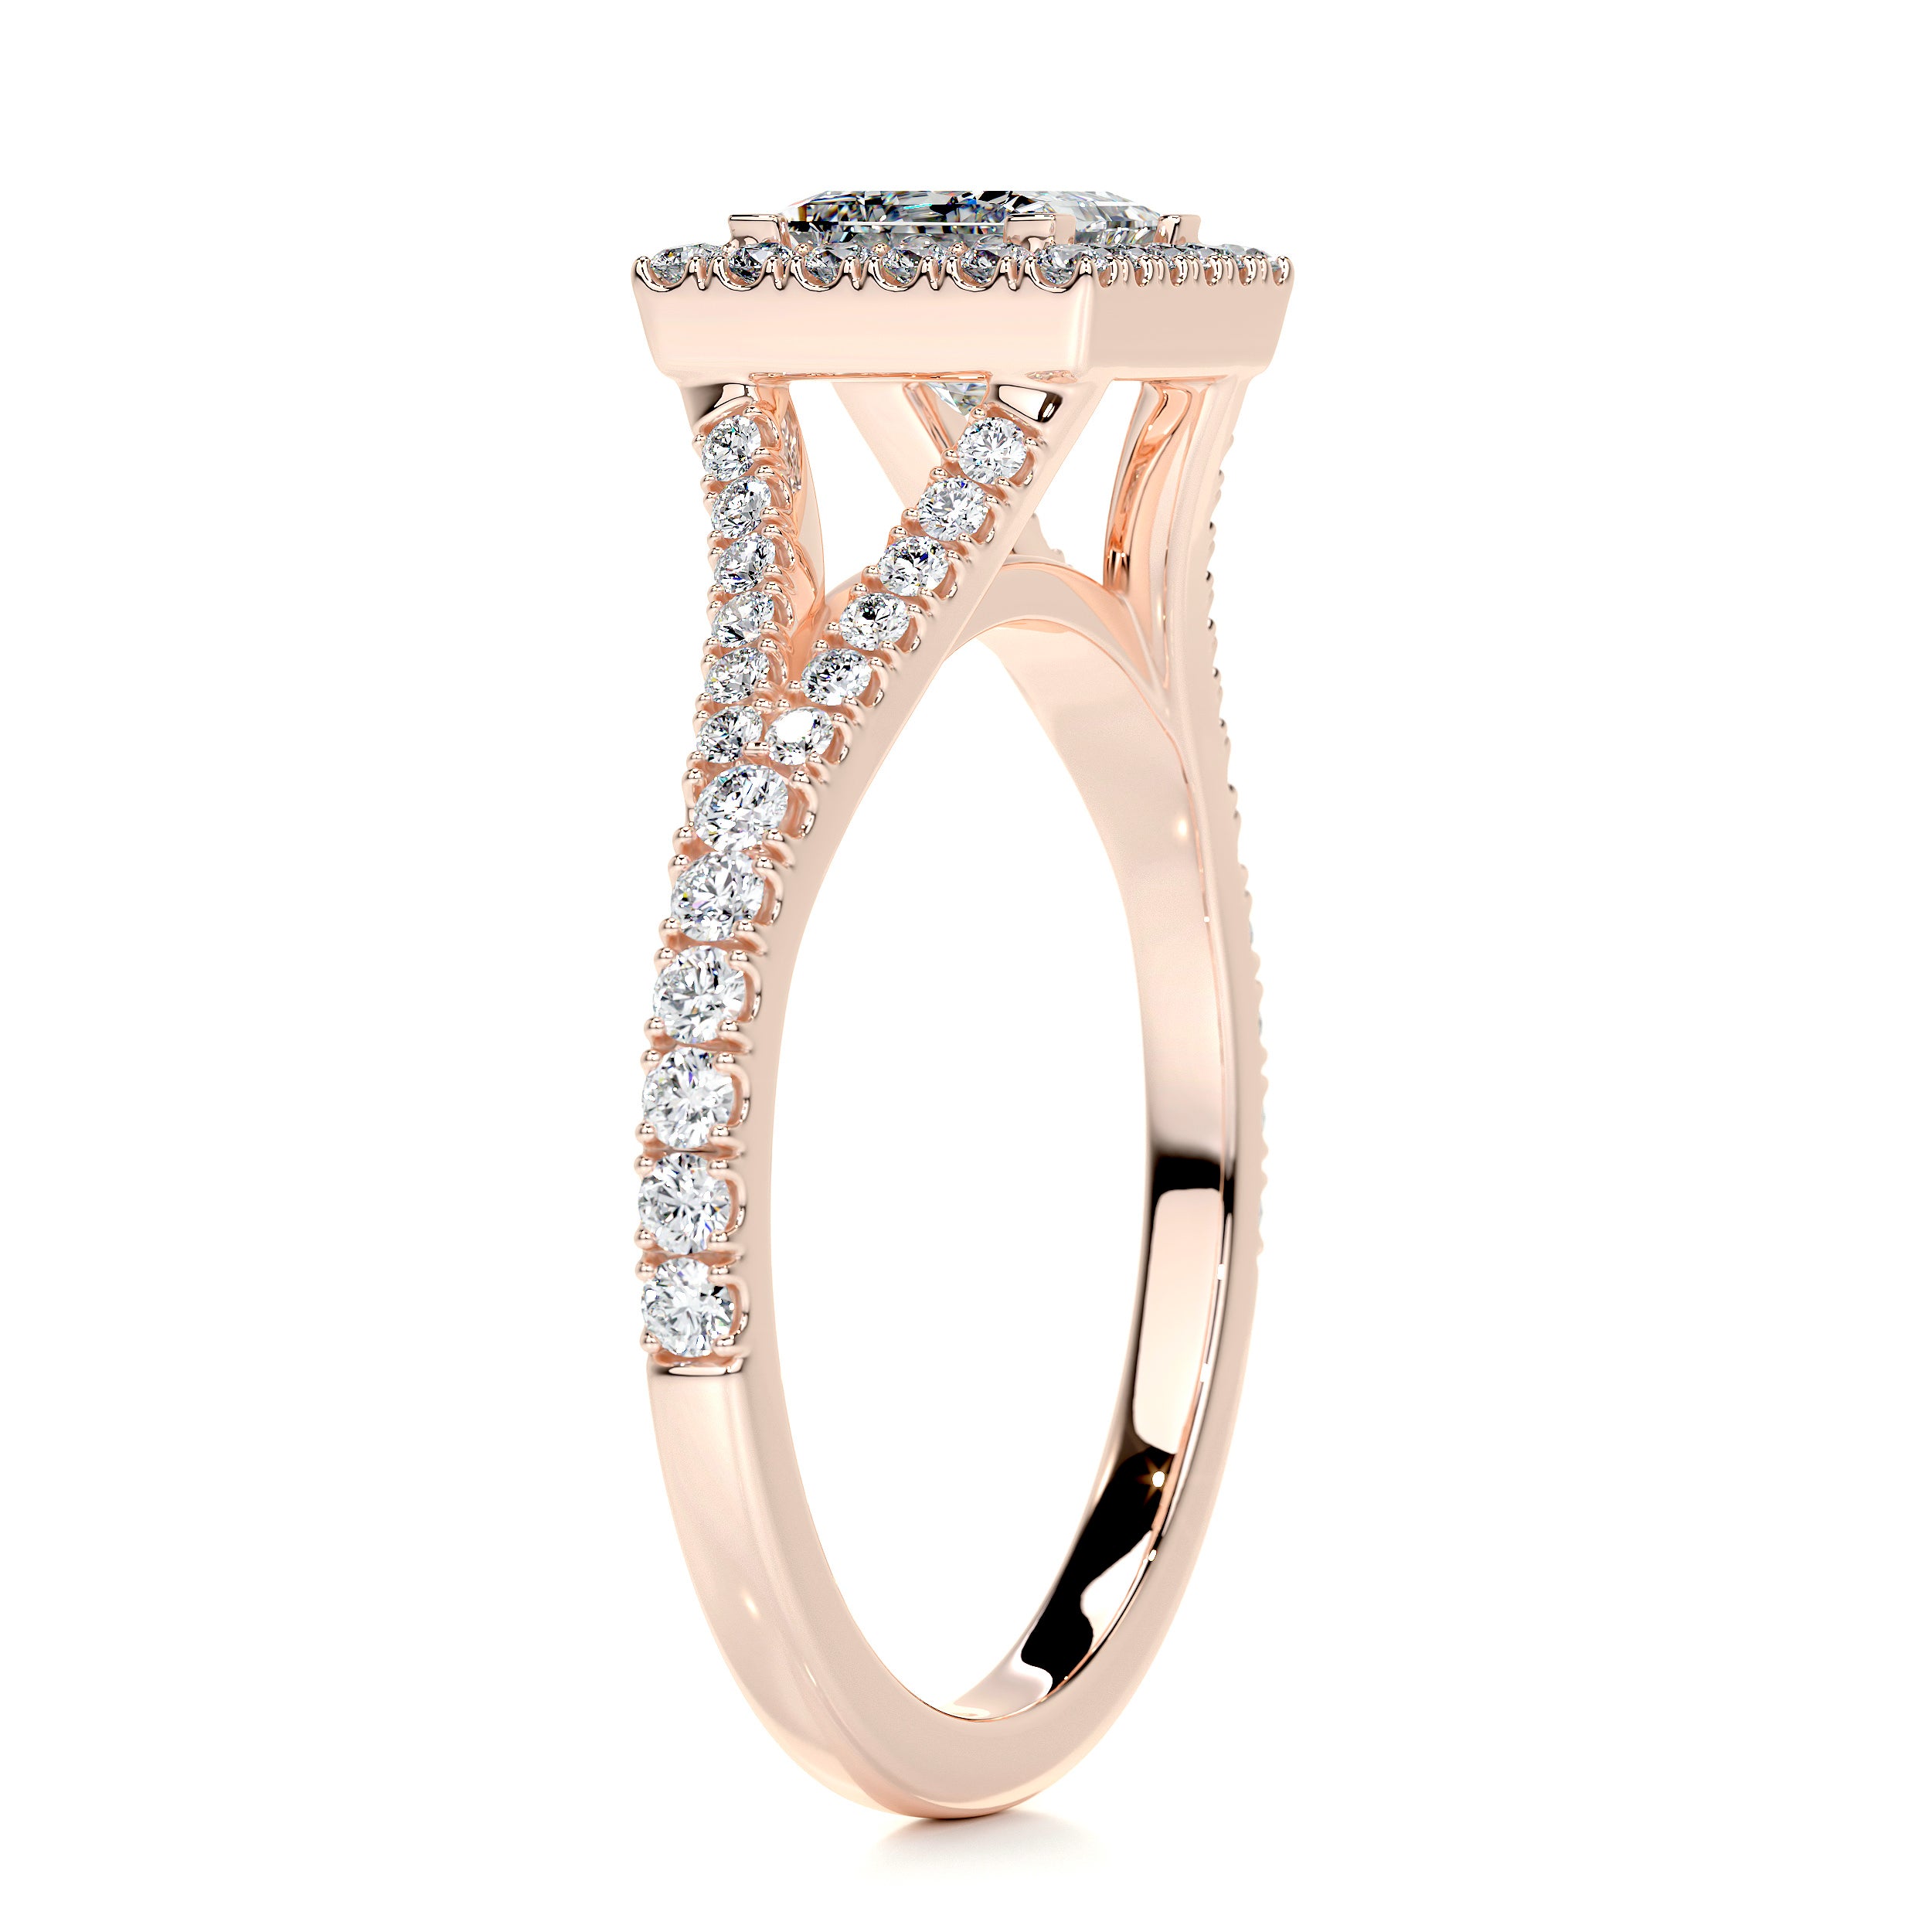 Celia Diamond Engagement Ring   (1.25 Carat) -14K Rose Gold